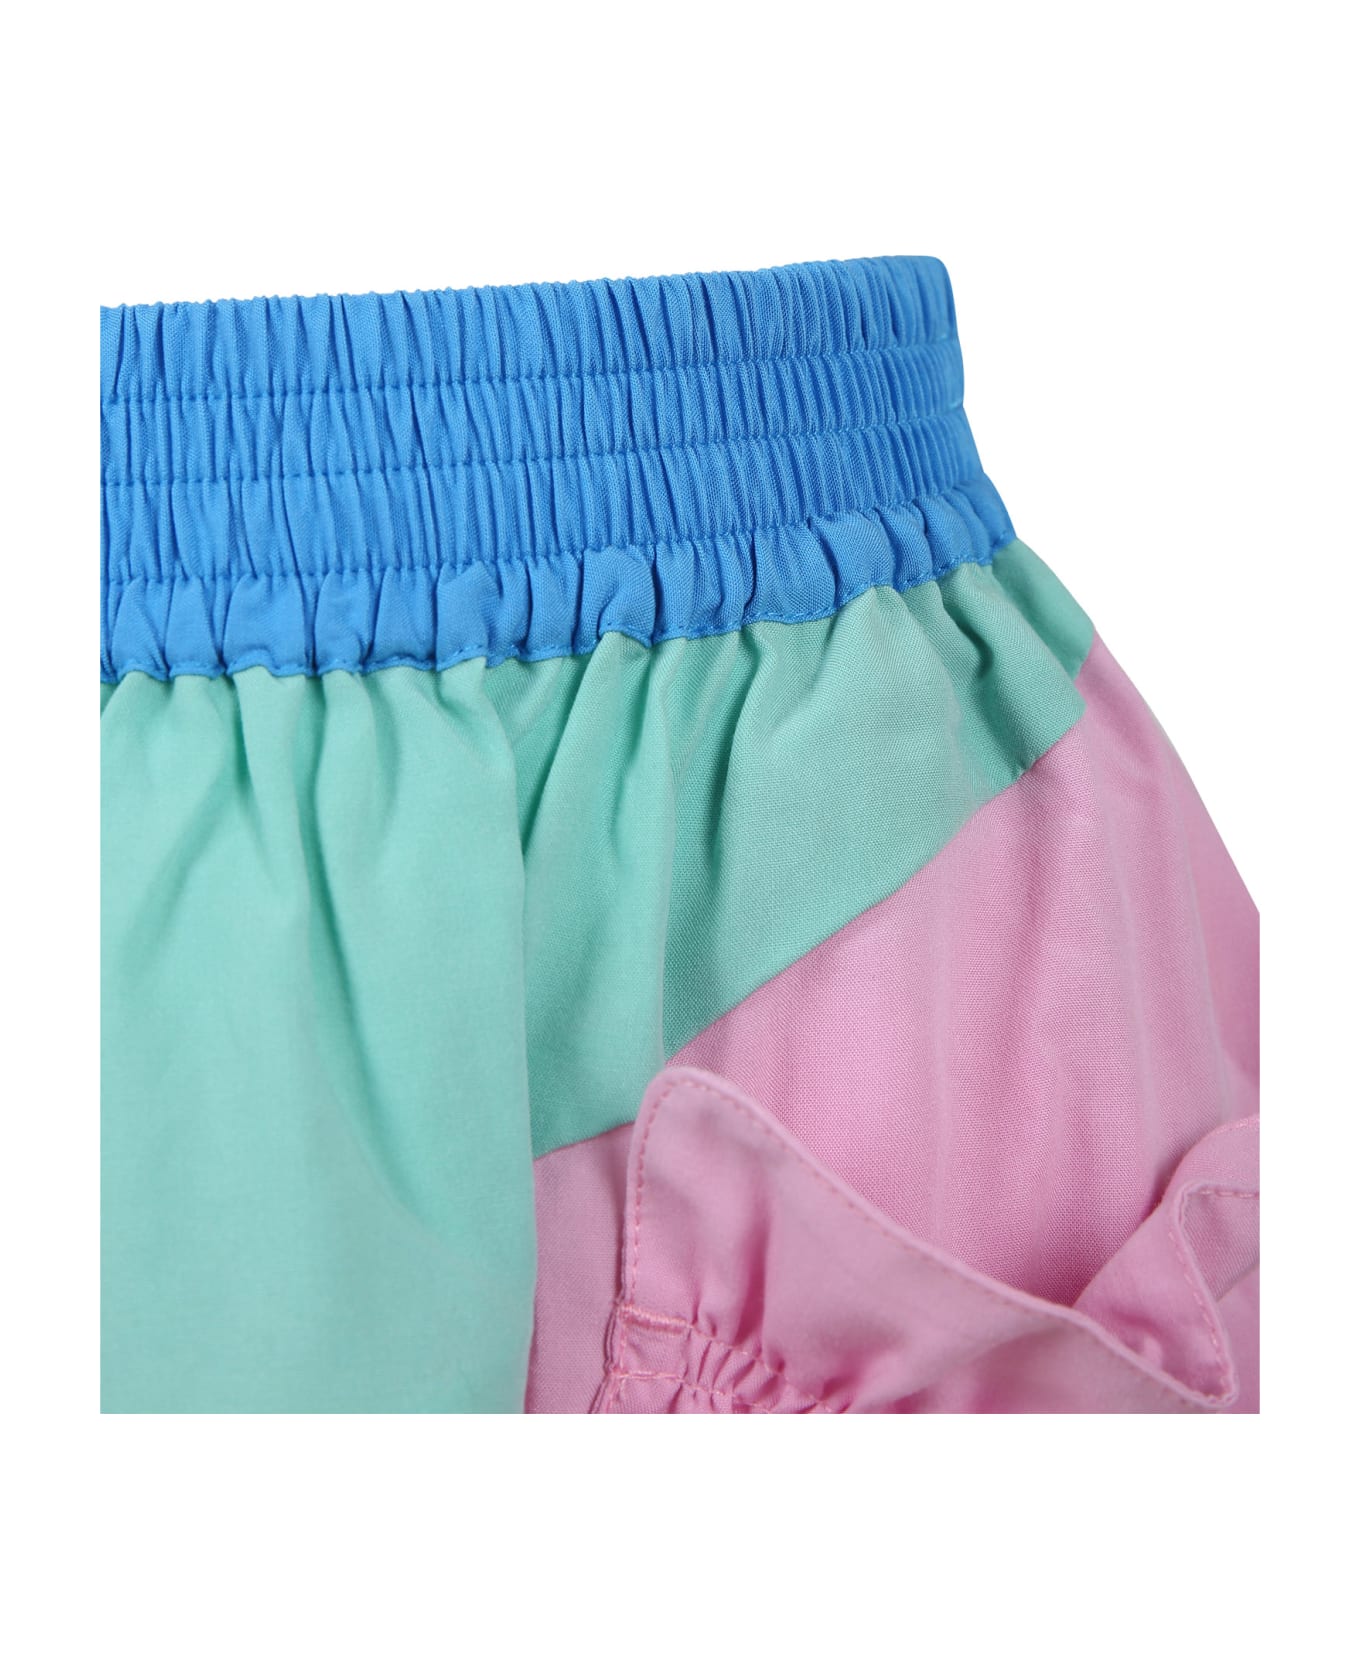 Stella McCartney Kids Multicolor Skirt For Girl - Multicolor